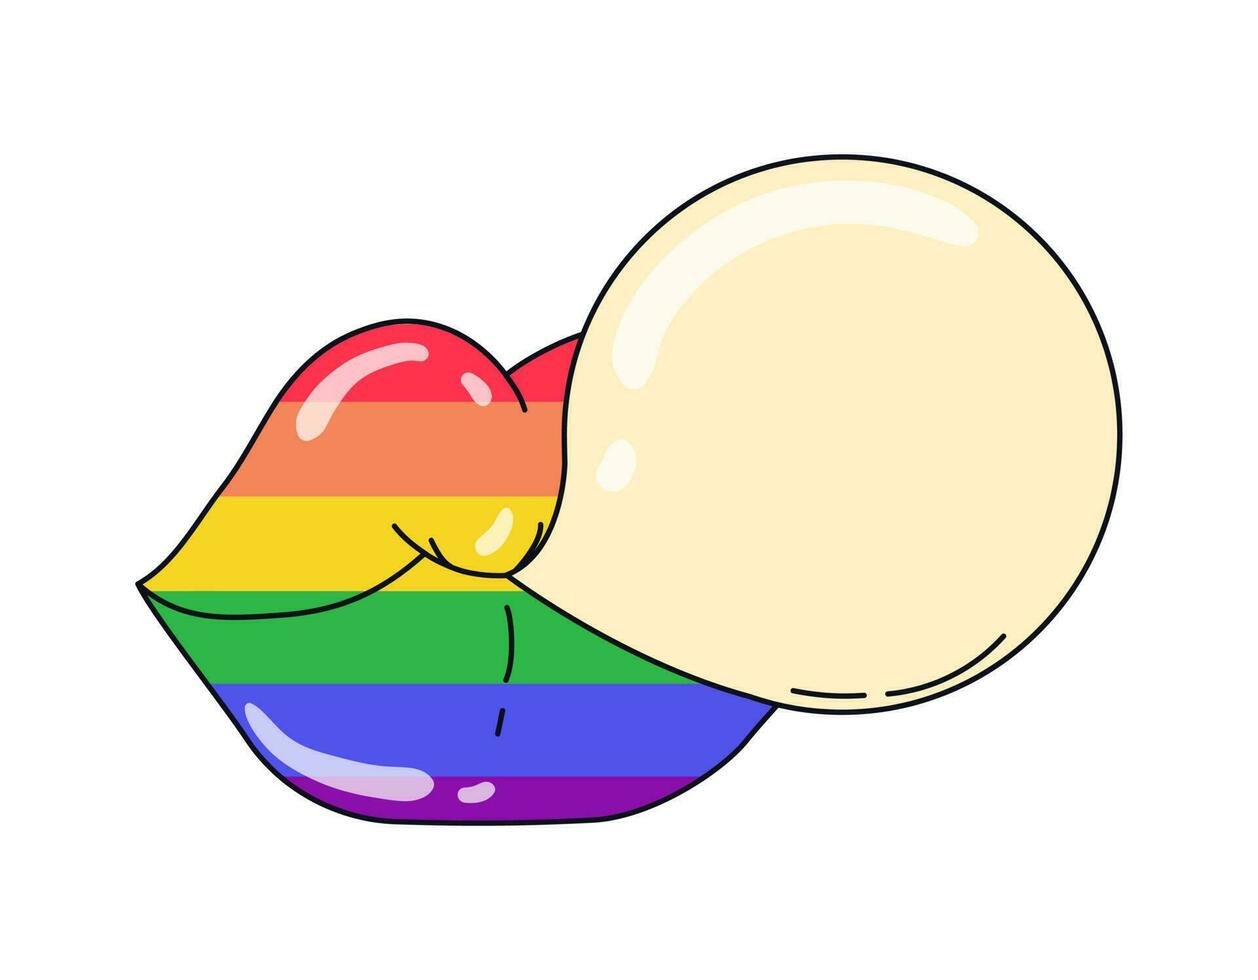 bubbel gom en lippen in regenboog kleuren. trots lgbt symbolen. ondersteunen liefde vrijheid. vlak vector illustratie.